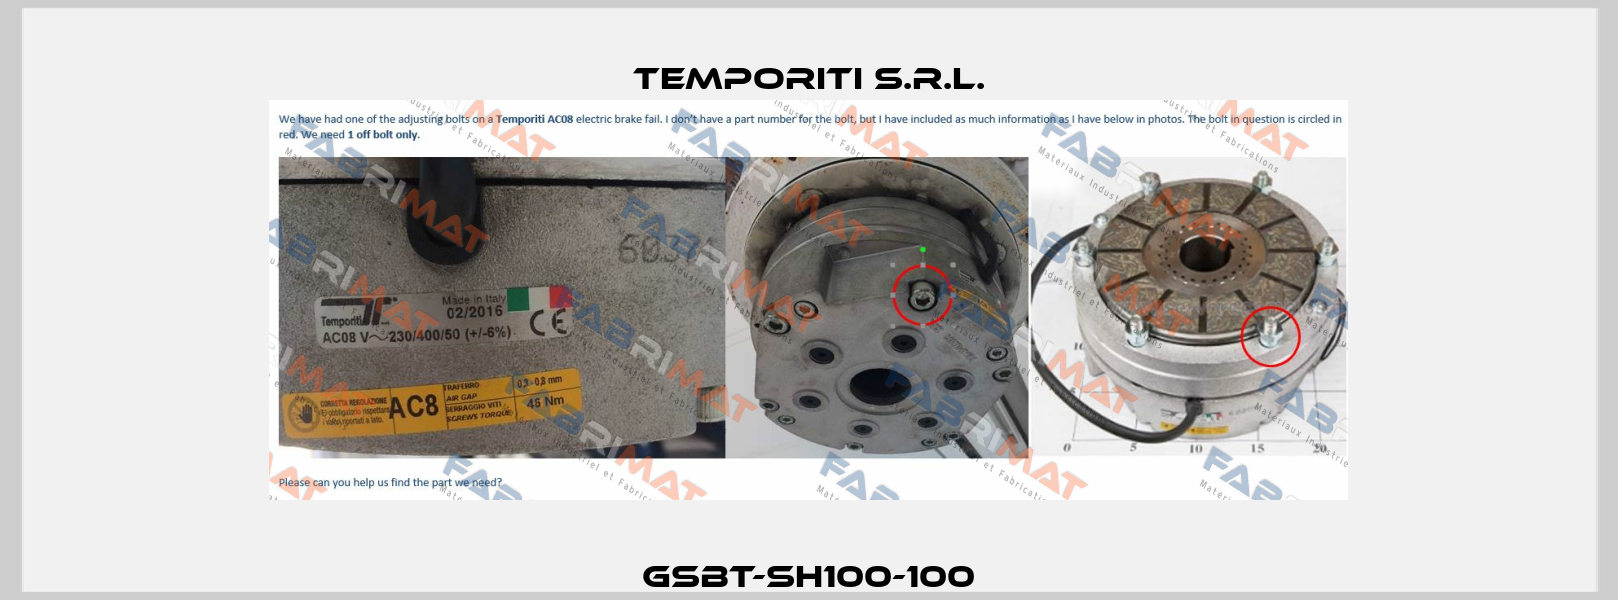 GSBT-SH100-100 Temporiti s.r.l.